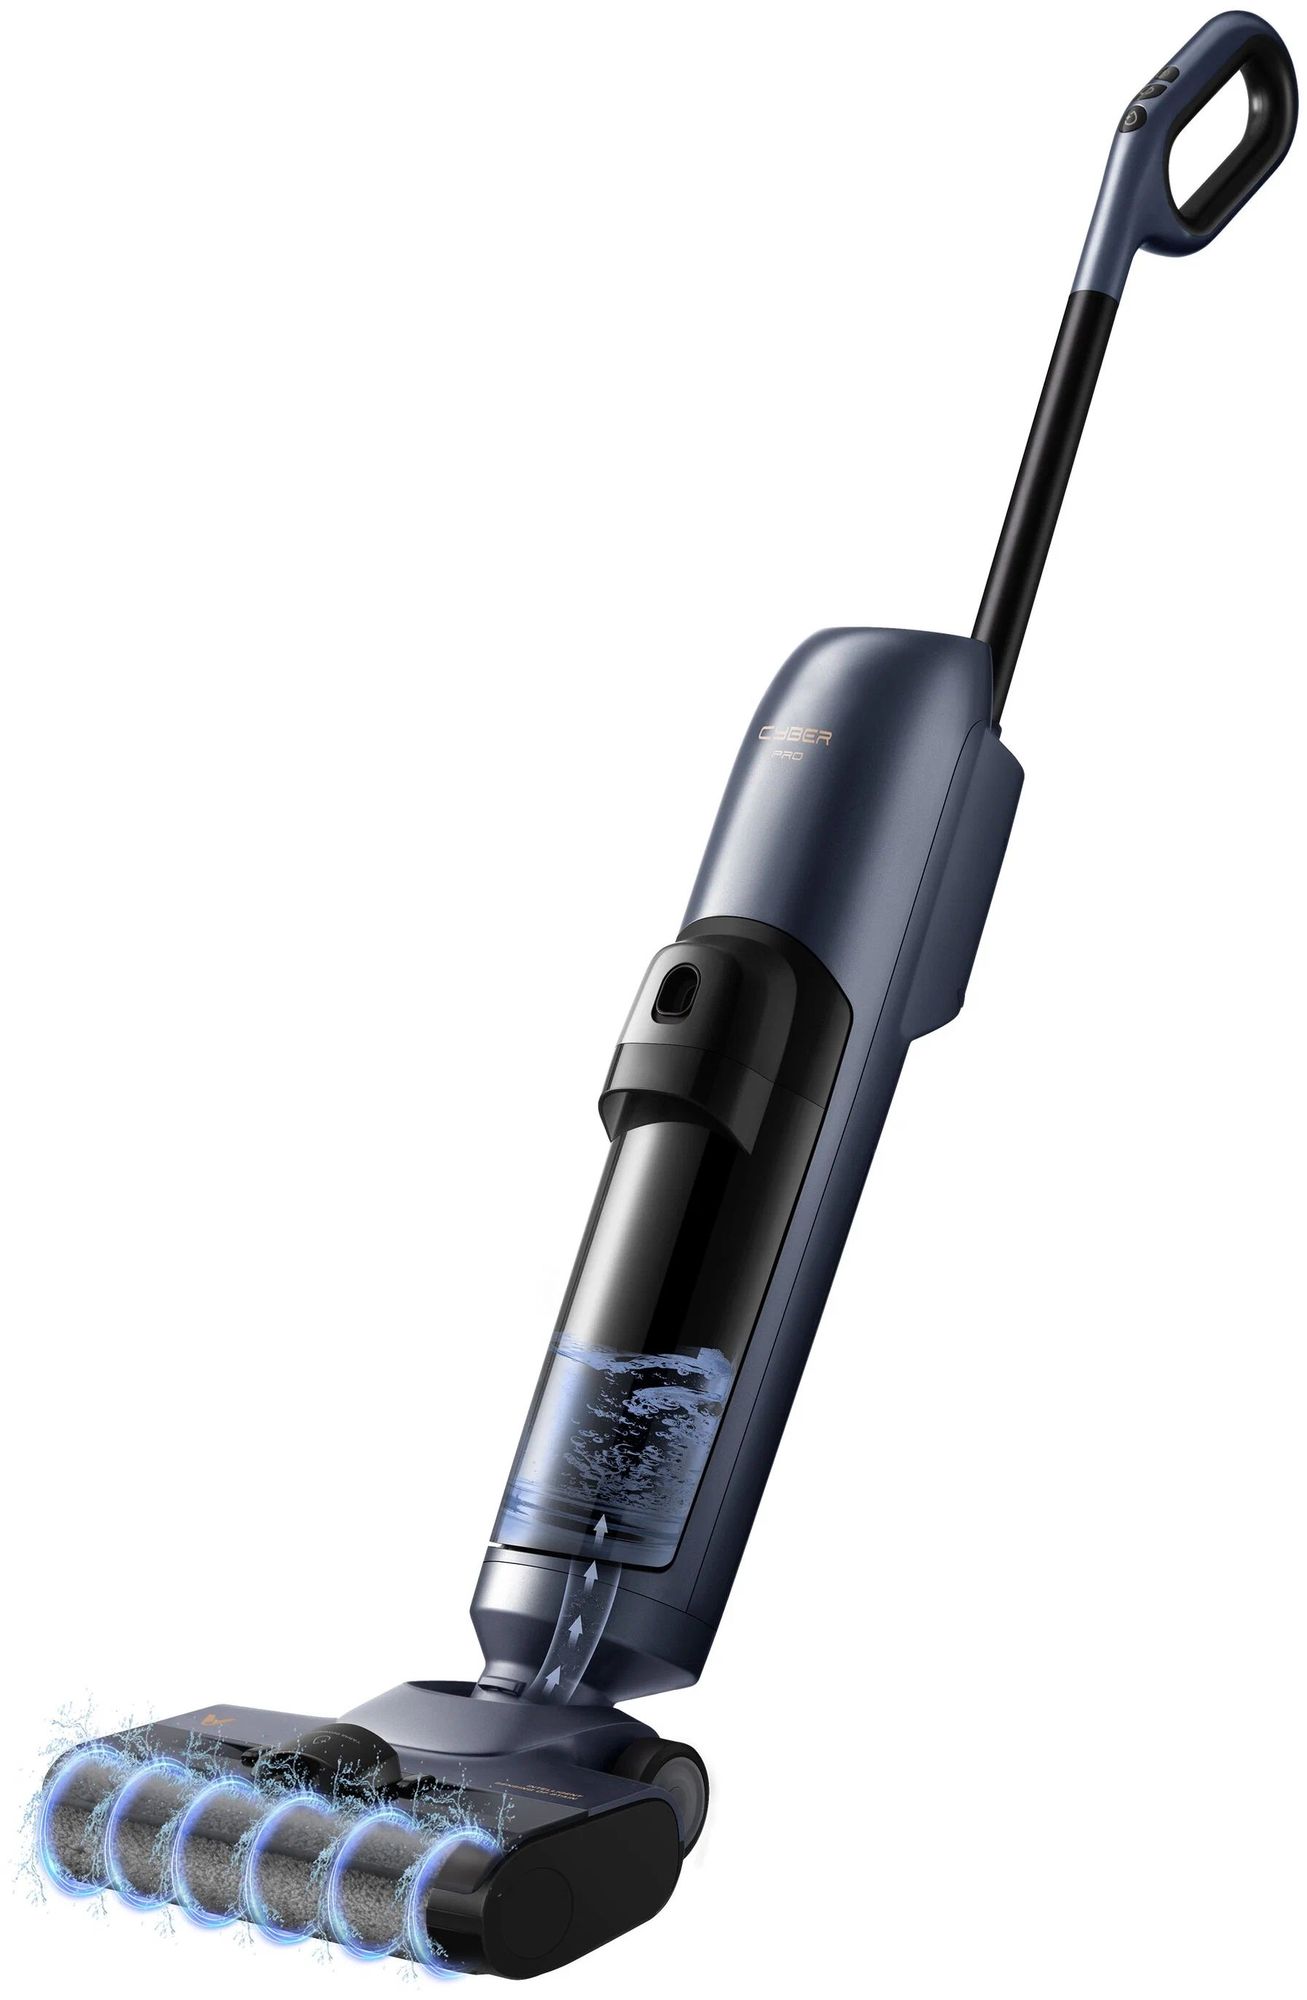 Вертикальный моющий пылесос Viomi Cordless Wet-Dry Vacuum Cleaner Cyber Pro Silver+Black (VXXD05) пылесос вертикальный viomi cordless vacuum cleaner a11